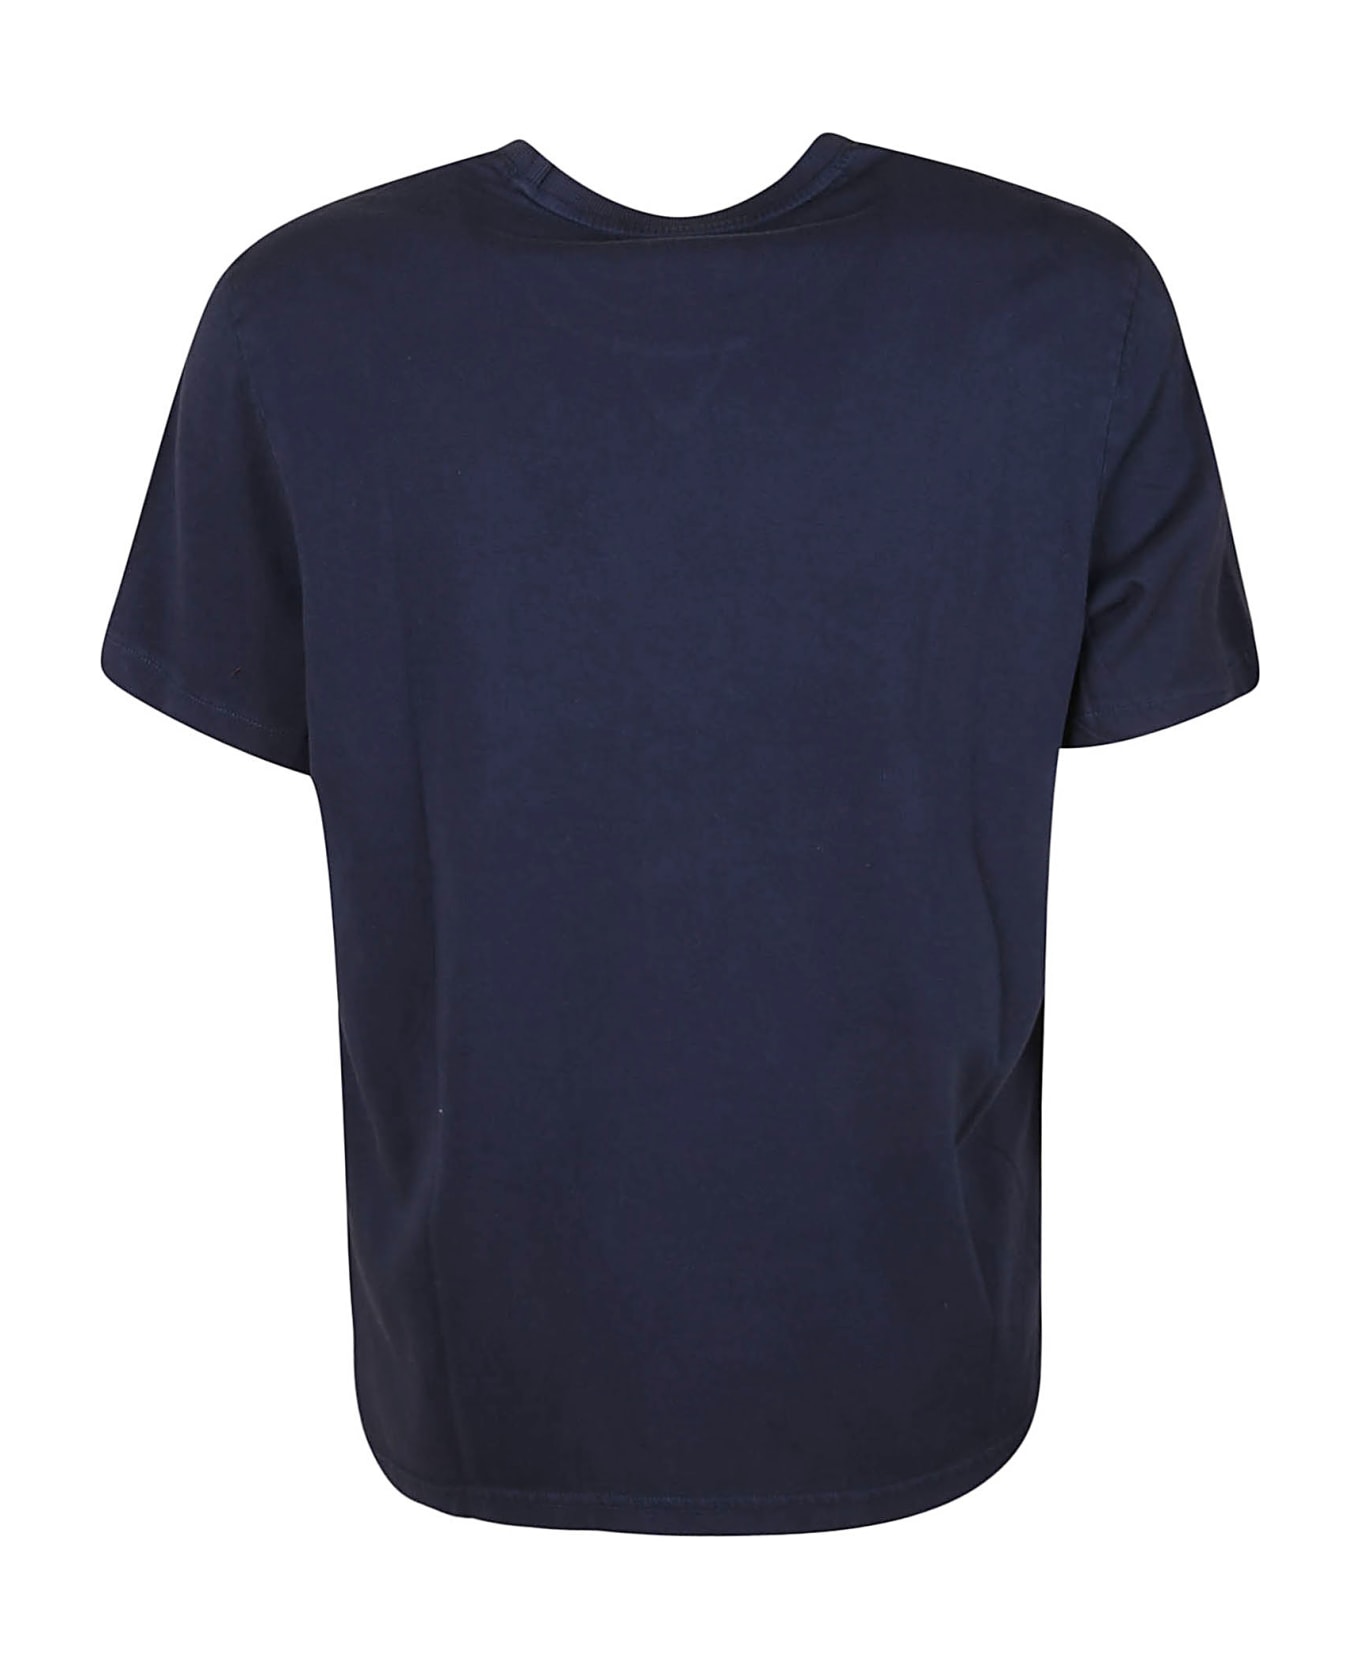 Michael Kors Spring 22 T-shirt - Midnight シャツ